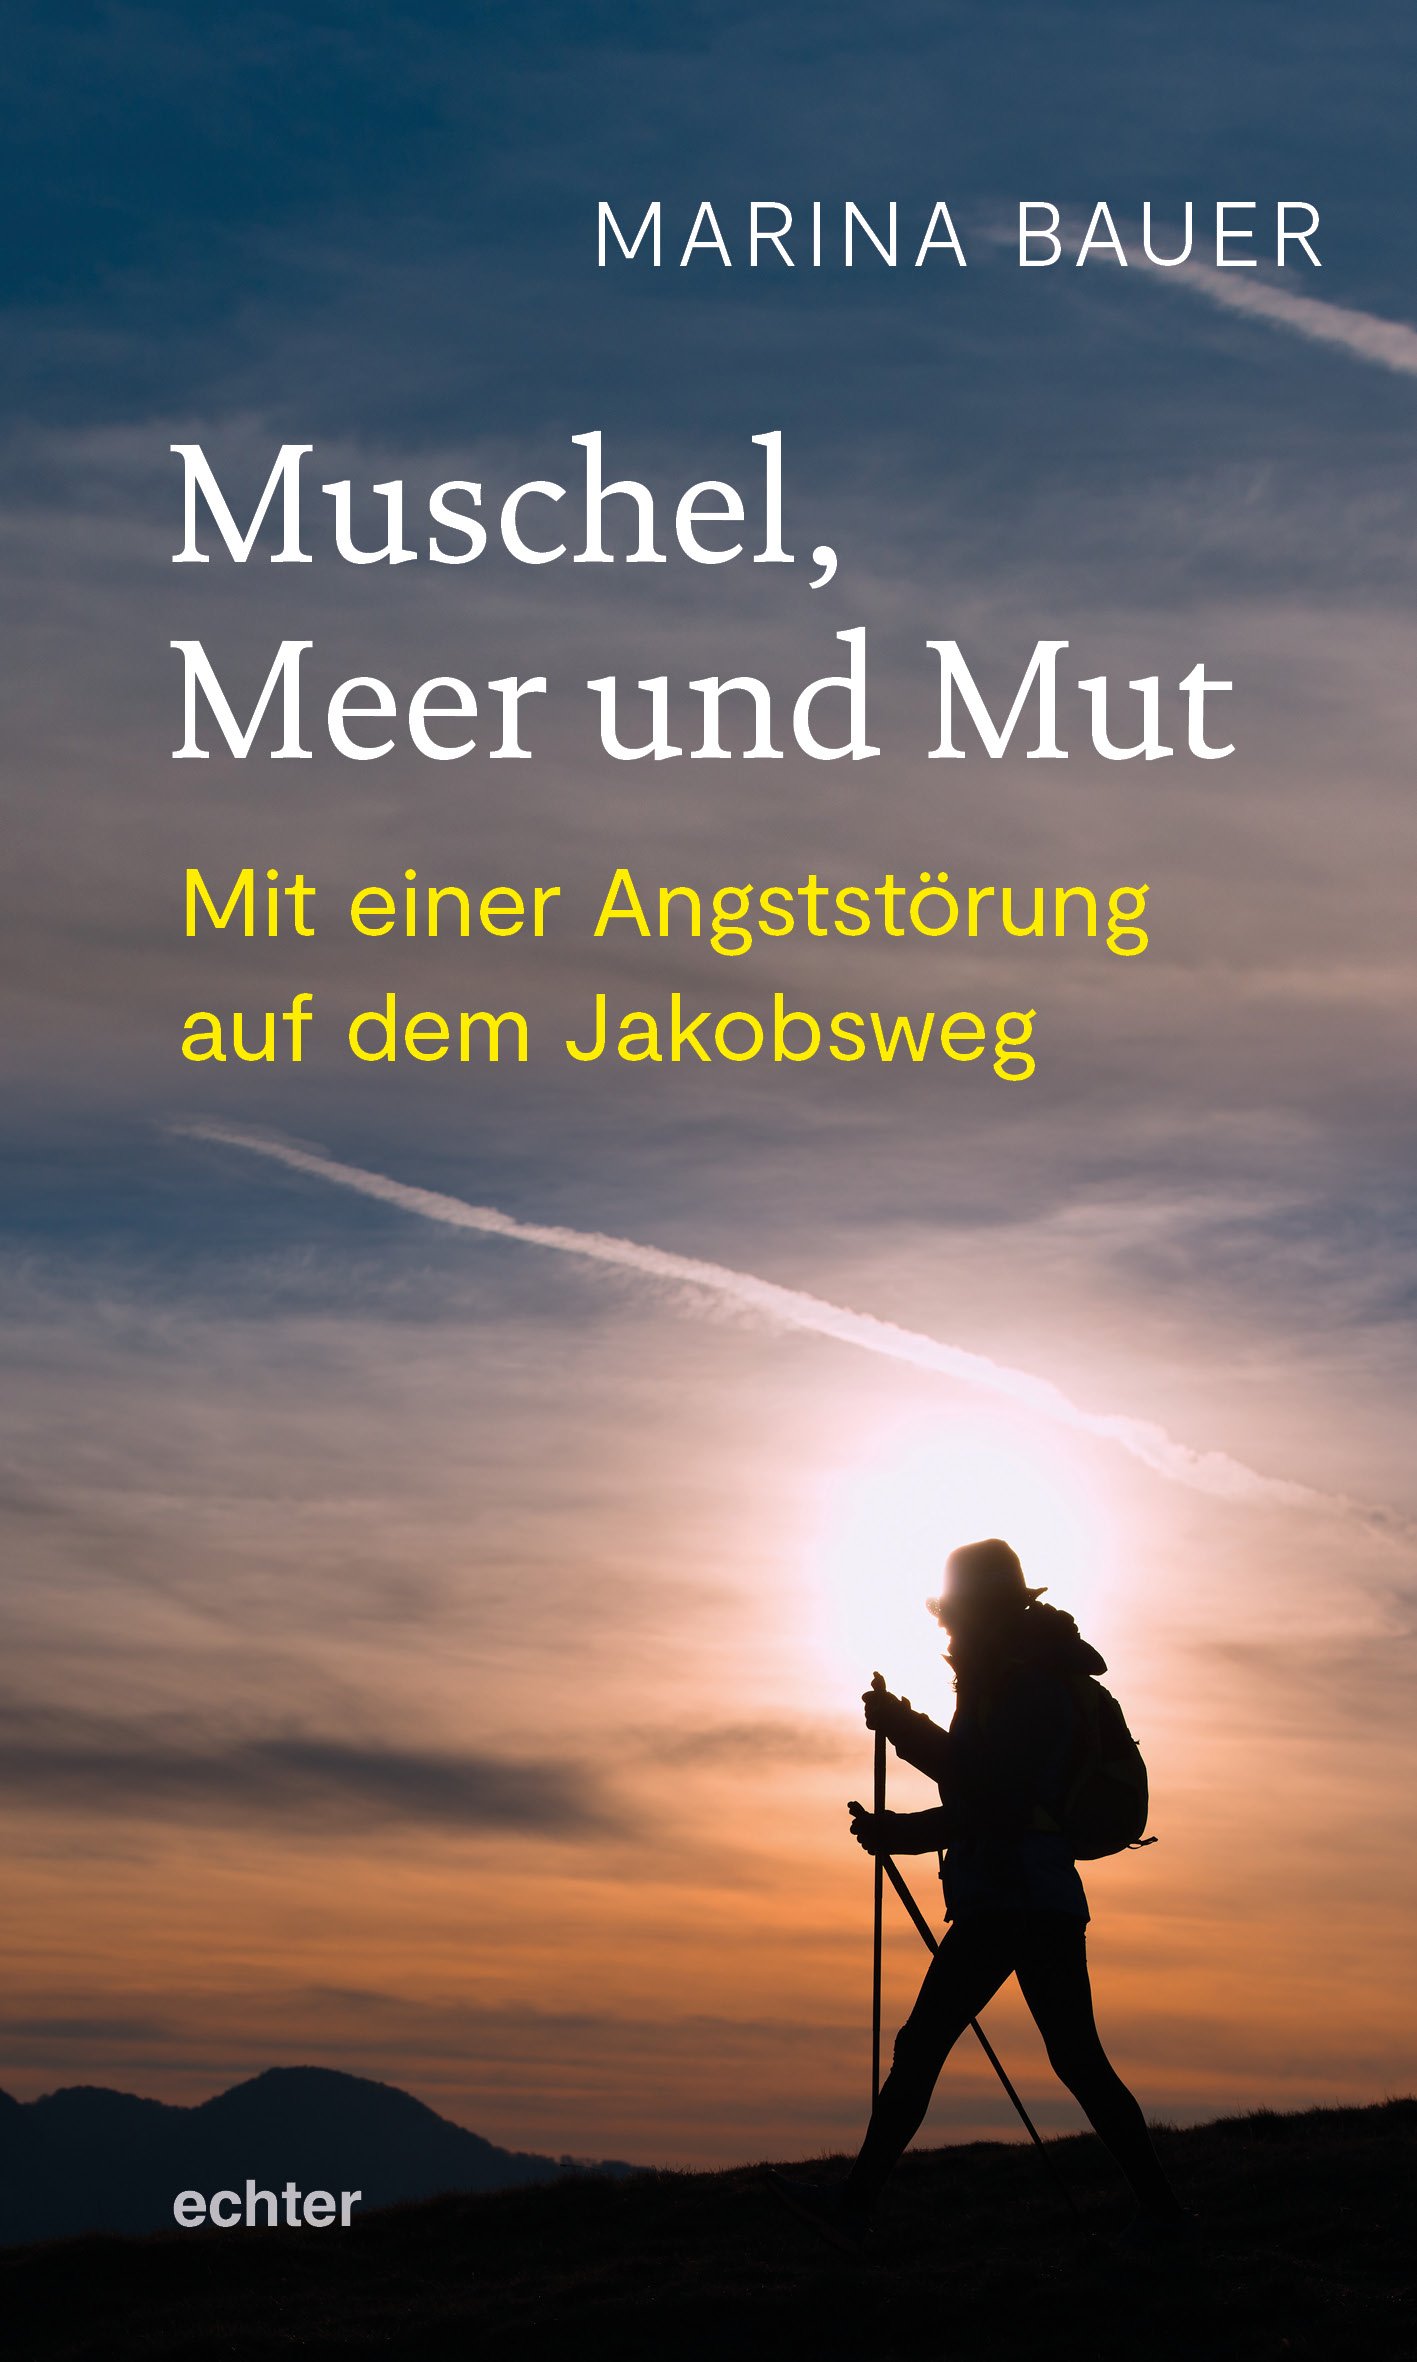 Bauer, Muschel, Meer und Mut_Cover_rz_02.jpg